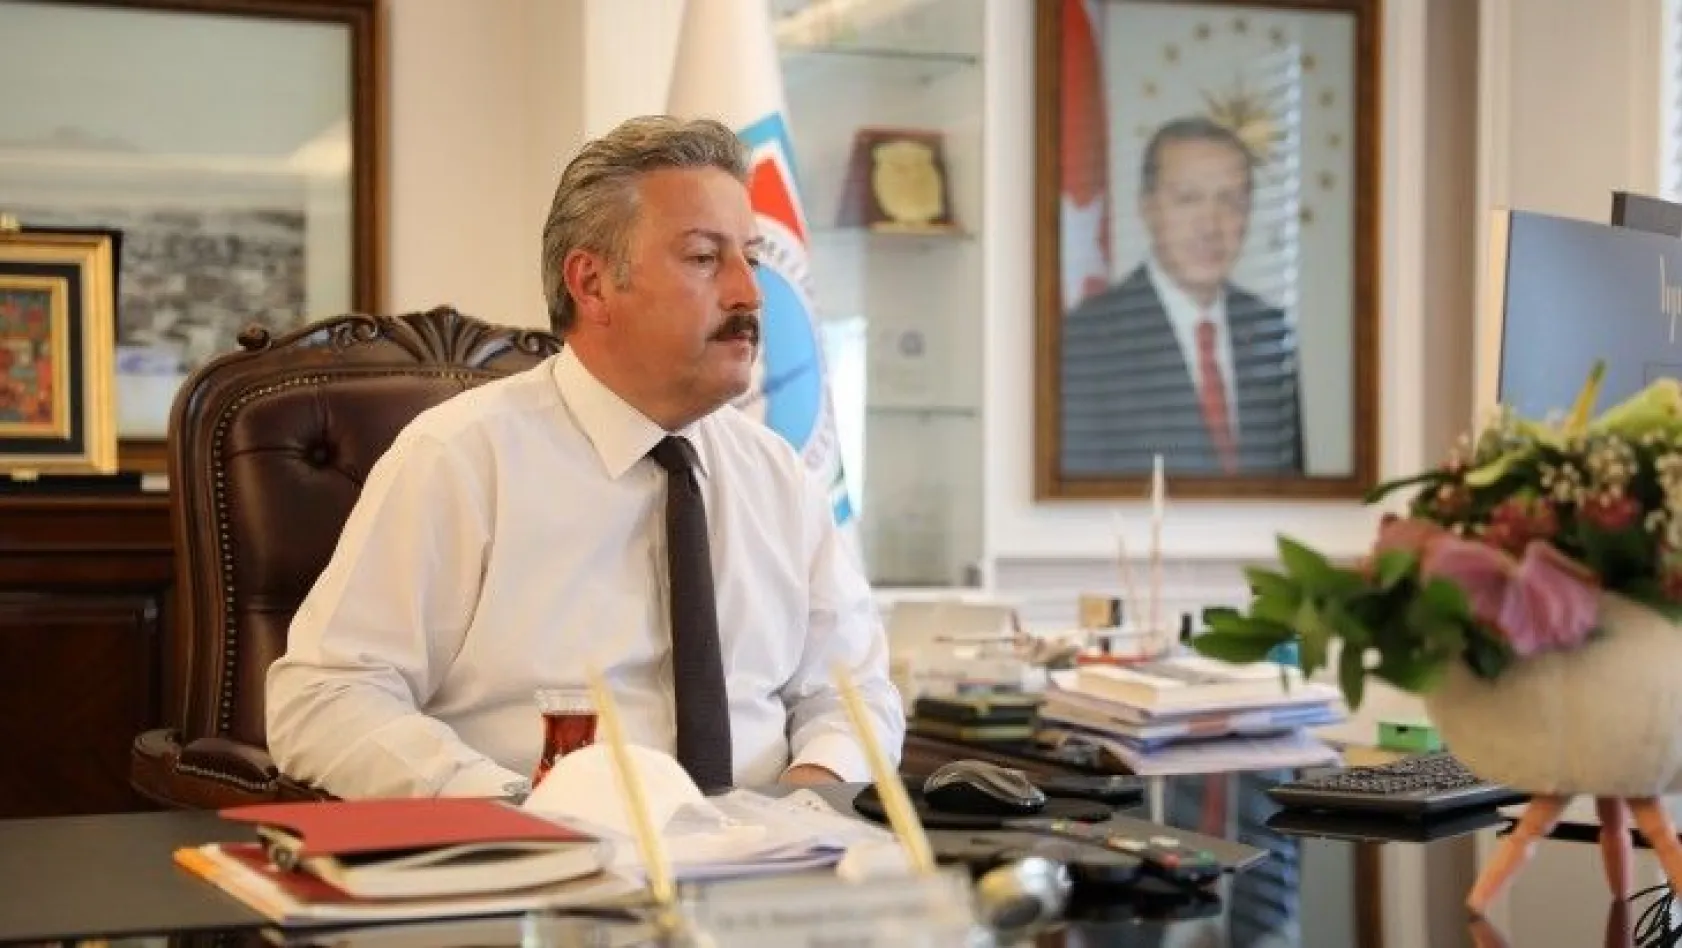 Palancıoğlu: 'Ülkemizin menfaatleri çerçevesinde görüşlerimizi aktarmayı sürdüreceğiz'